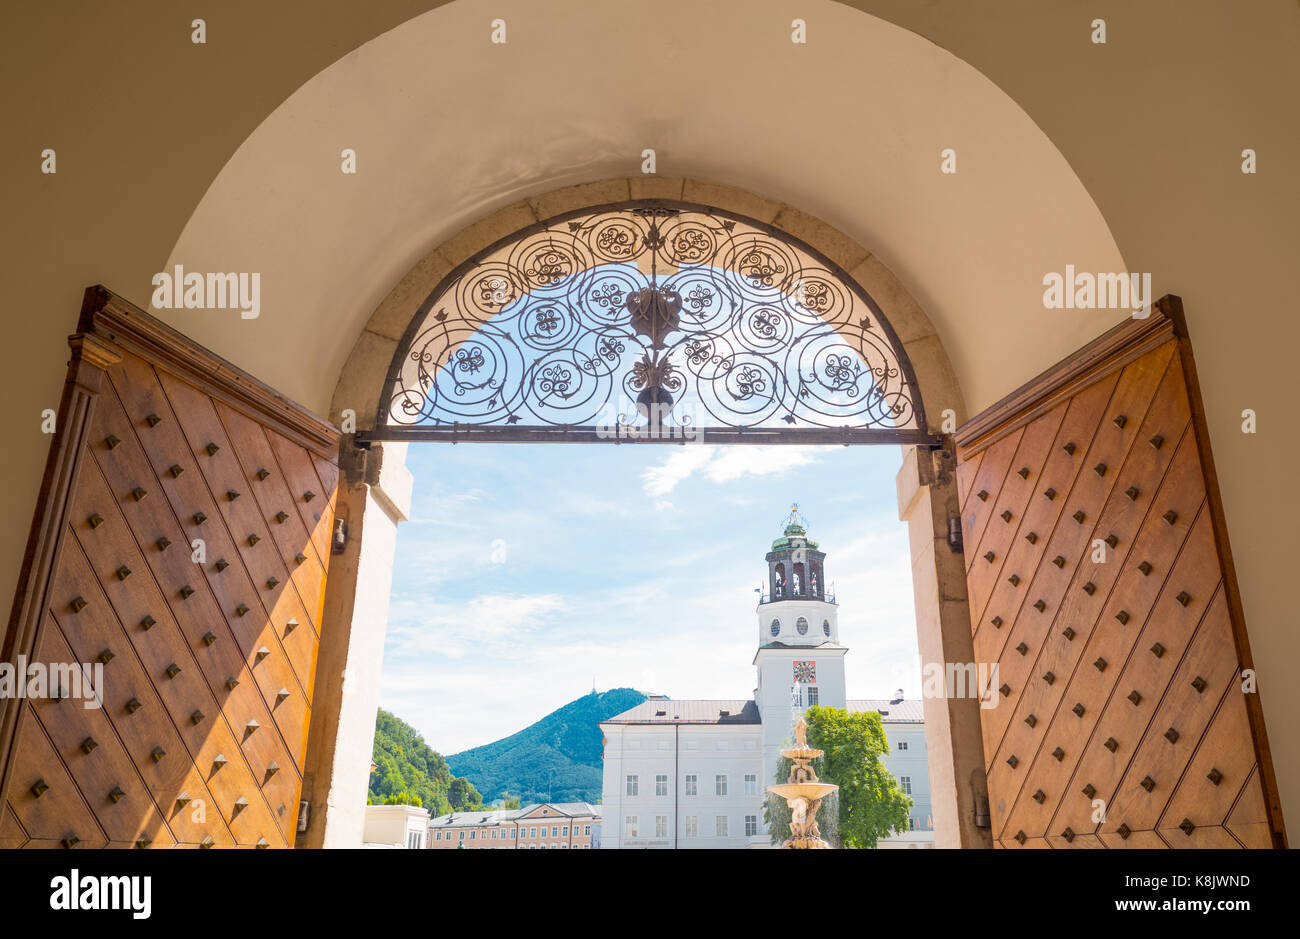 Austria, Salisburgo, vista della piazza della residenza dalla porta di ingresso di un nobile palazzo Foto Stock